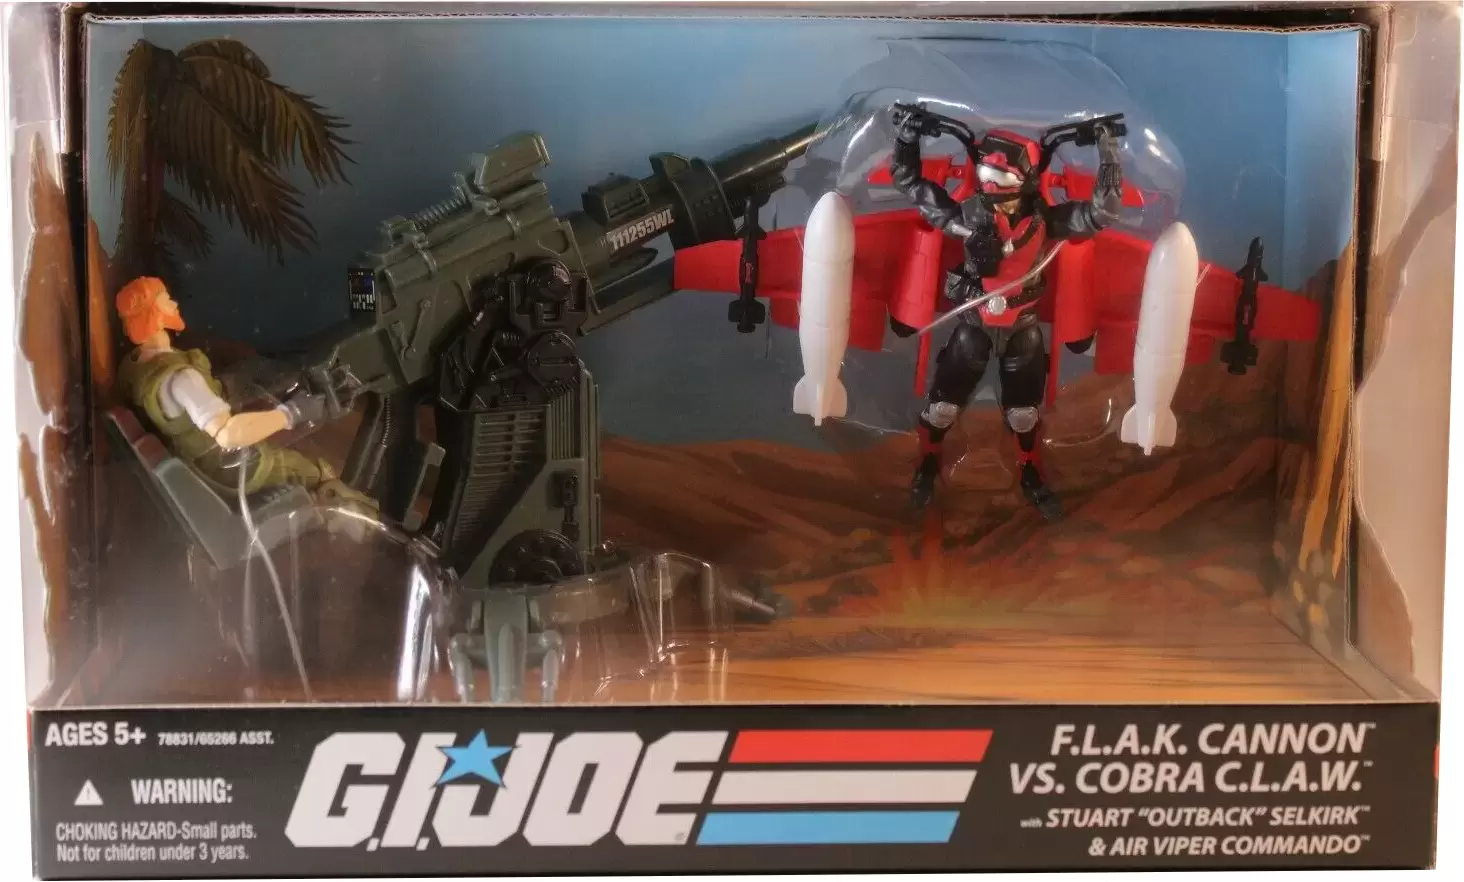 G.I. Joe - 25th Anniversary - F.L.A.K. Cannon vs Cobra C.L.A.W.